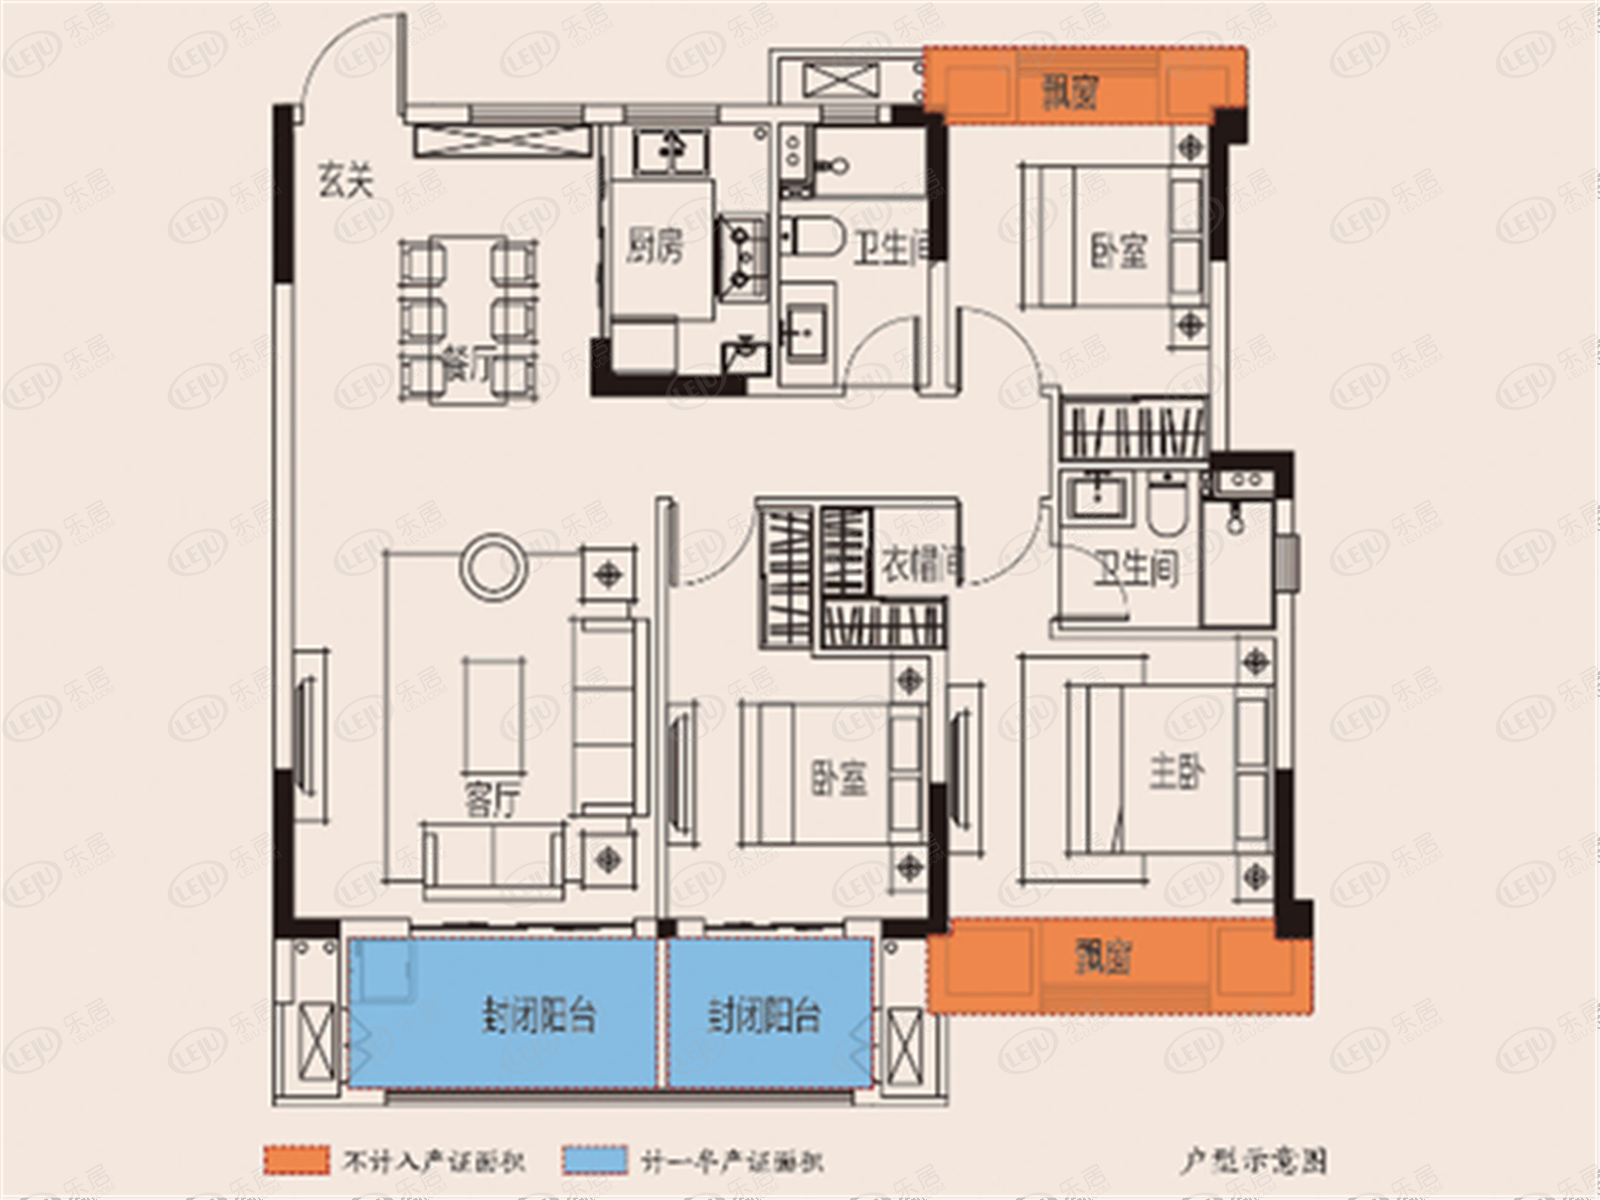 中梁·紫悦首府住宅户型图一览 均价约7800元/㎡